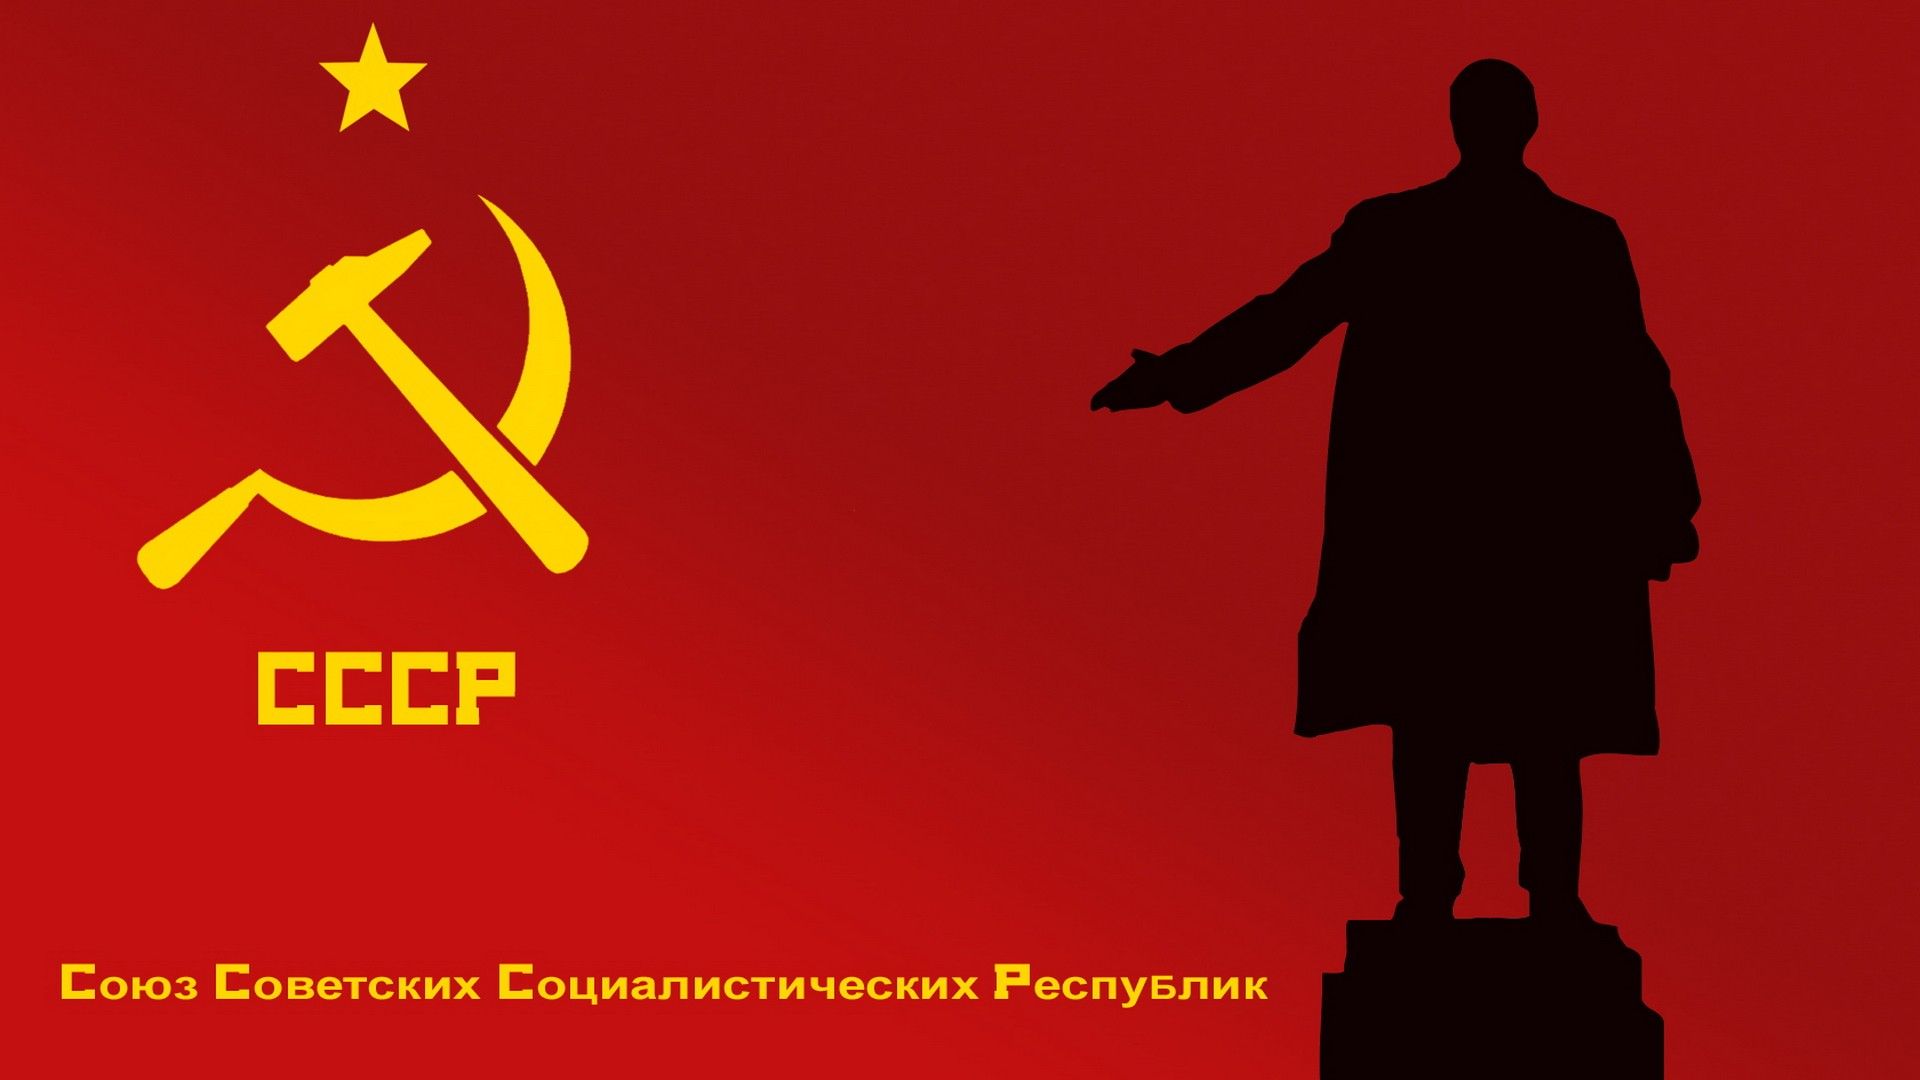 Wallpaper For Lenin